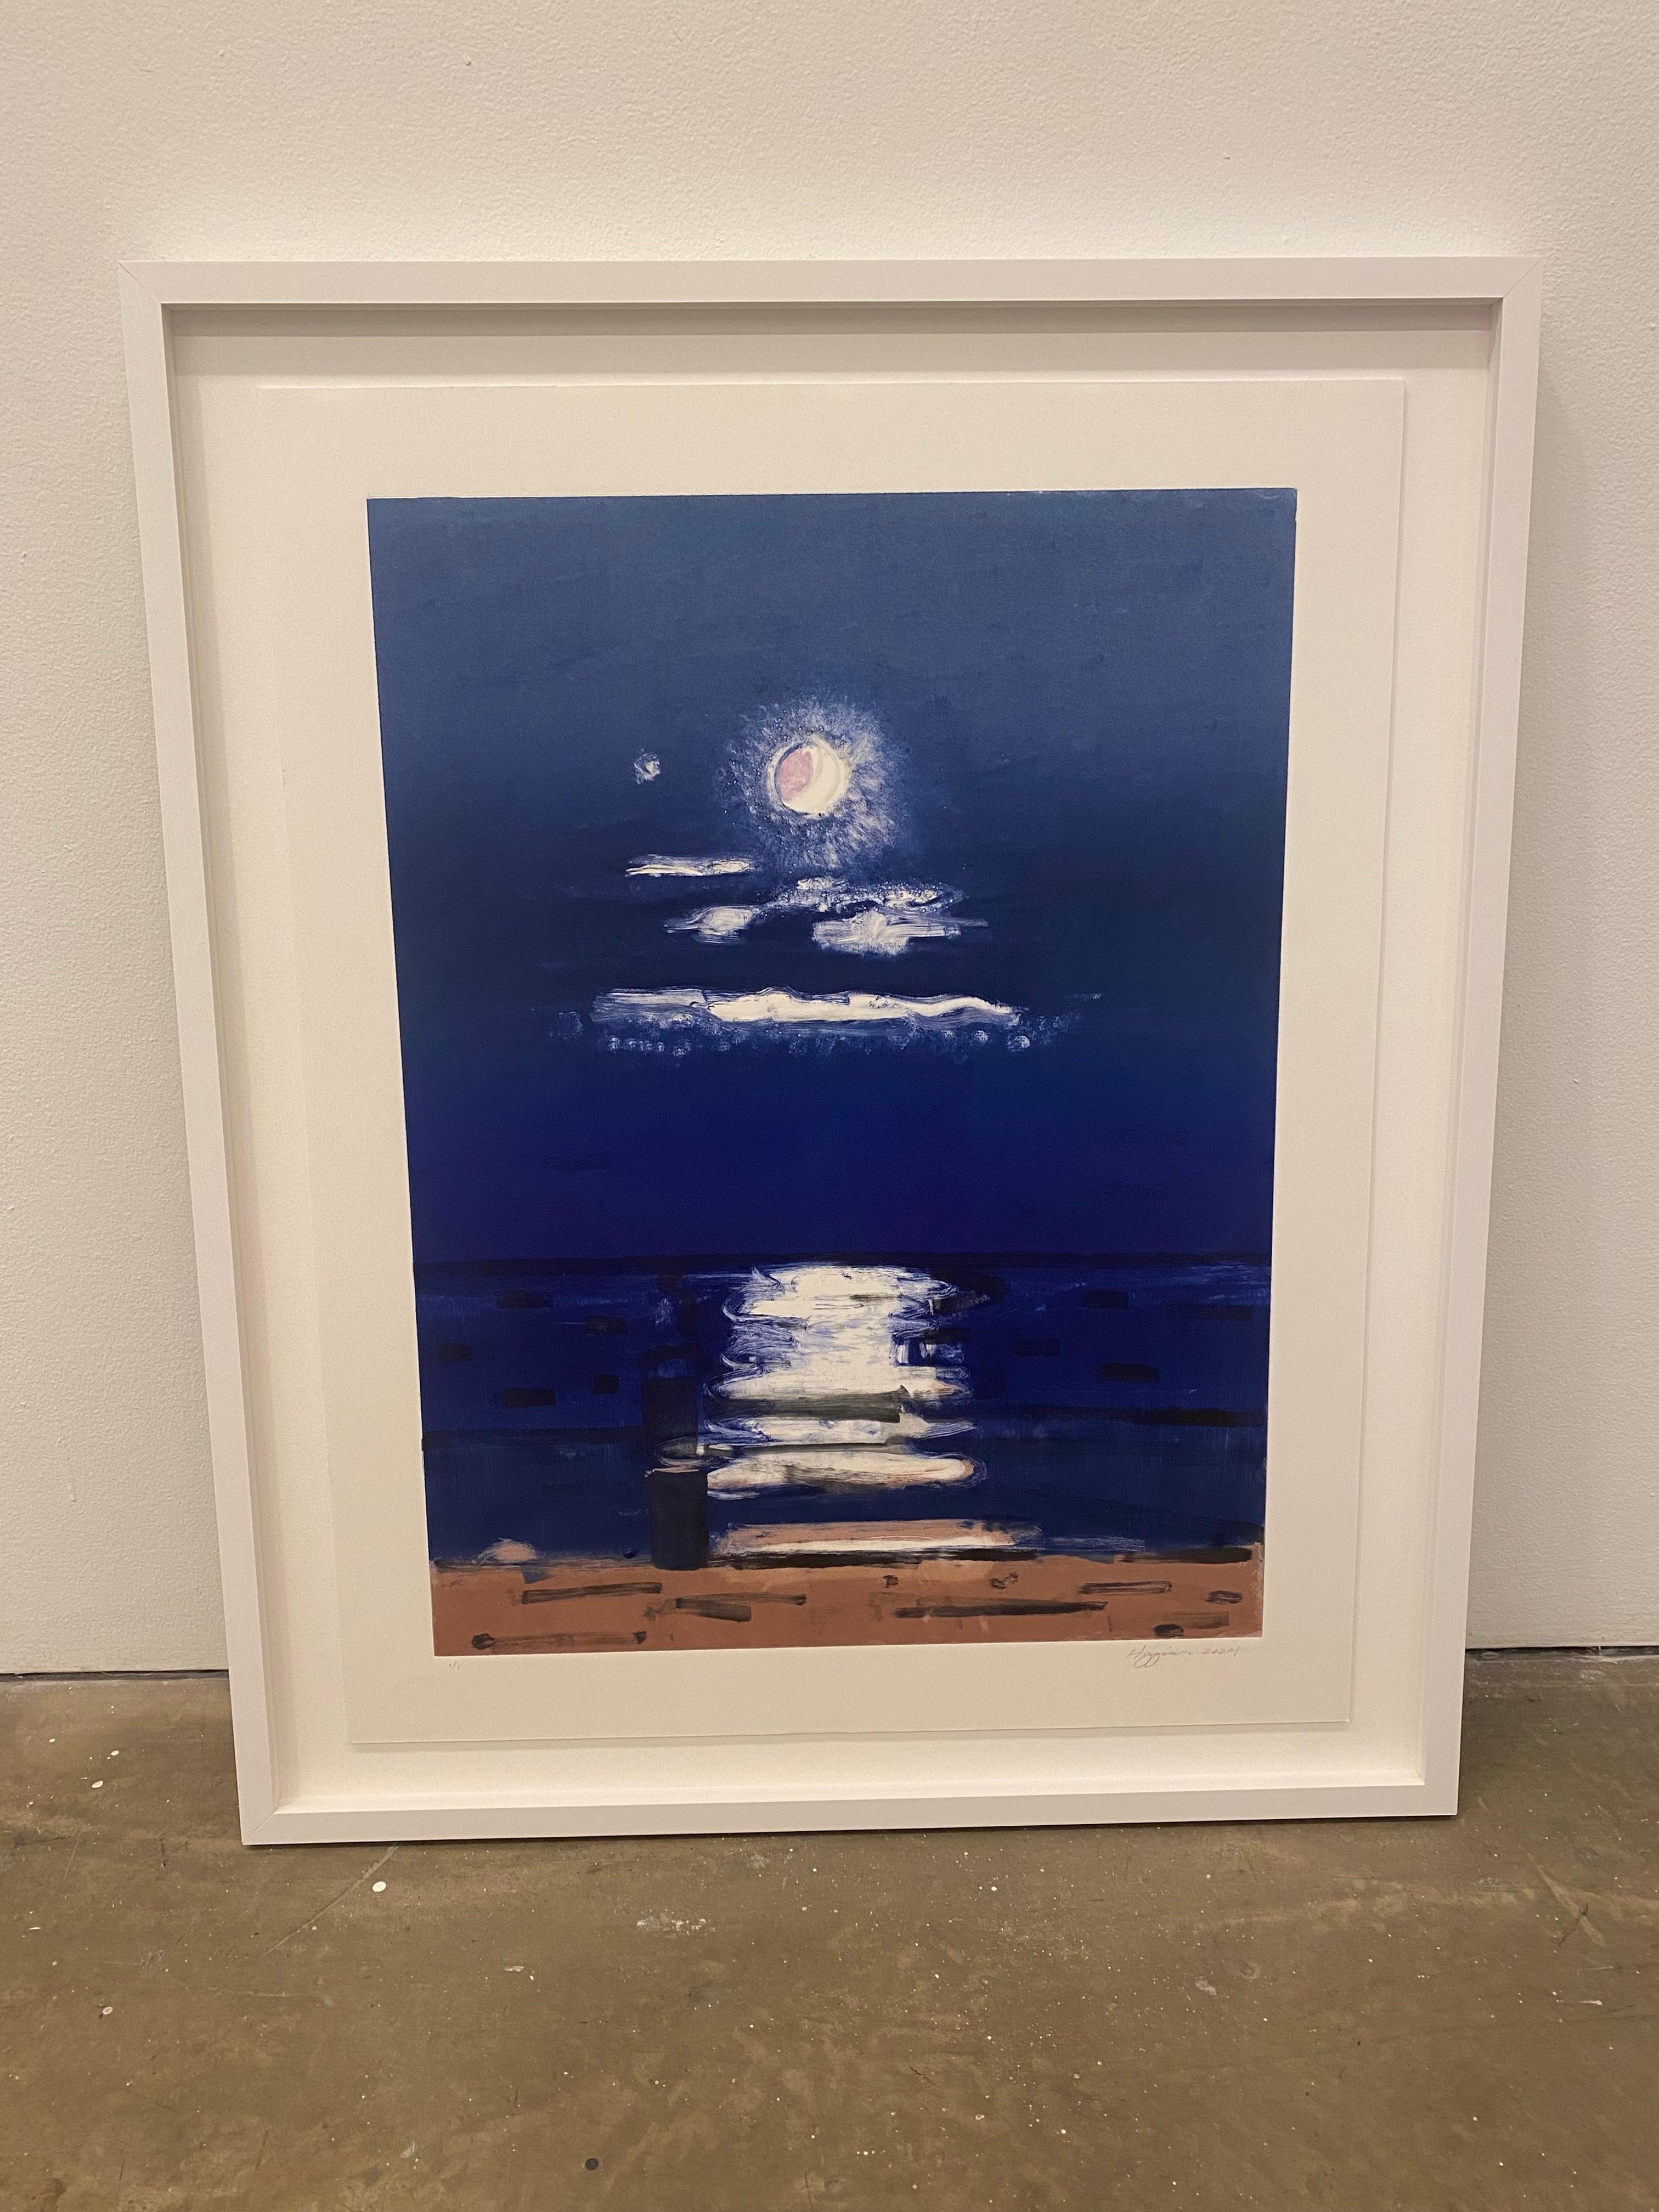 Moonlight on Water #1 - Painting by Elizabeth Higgins